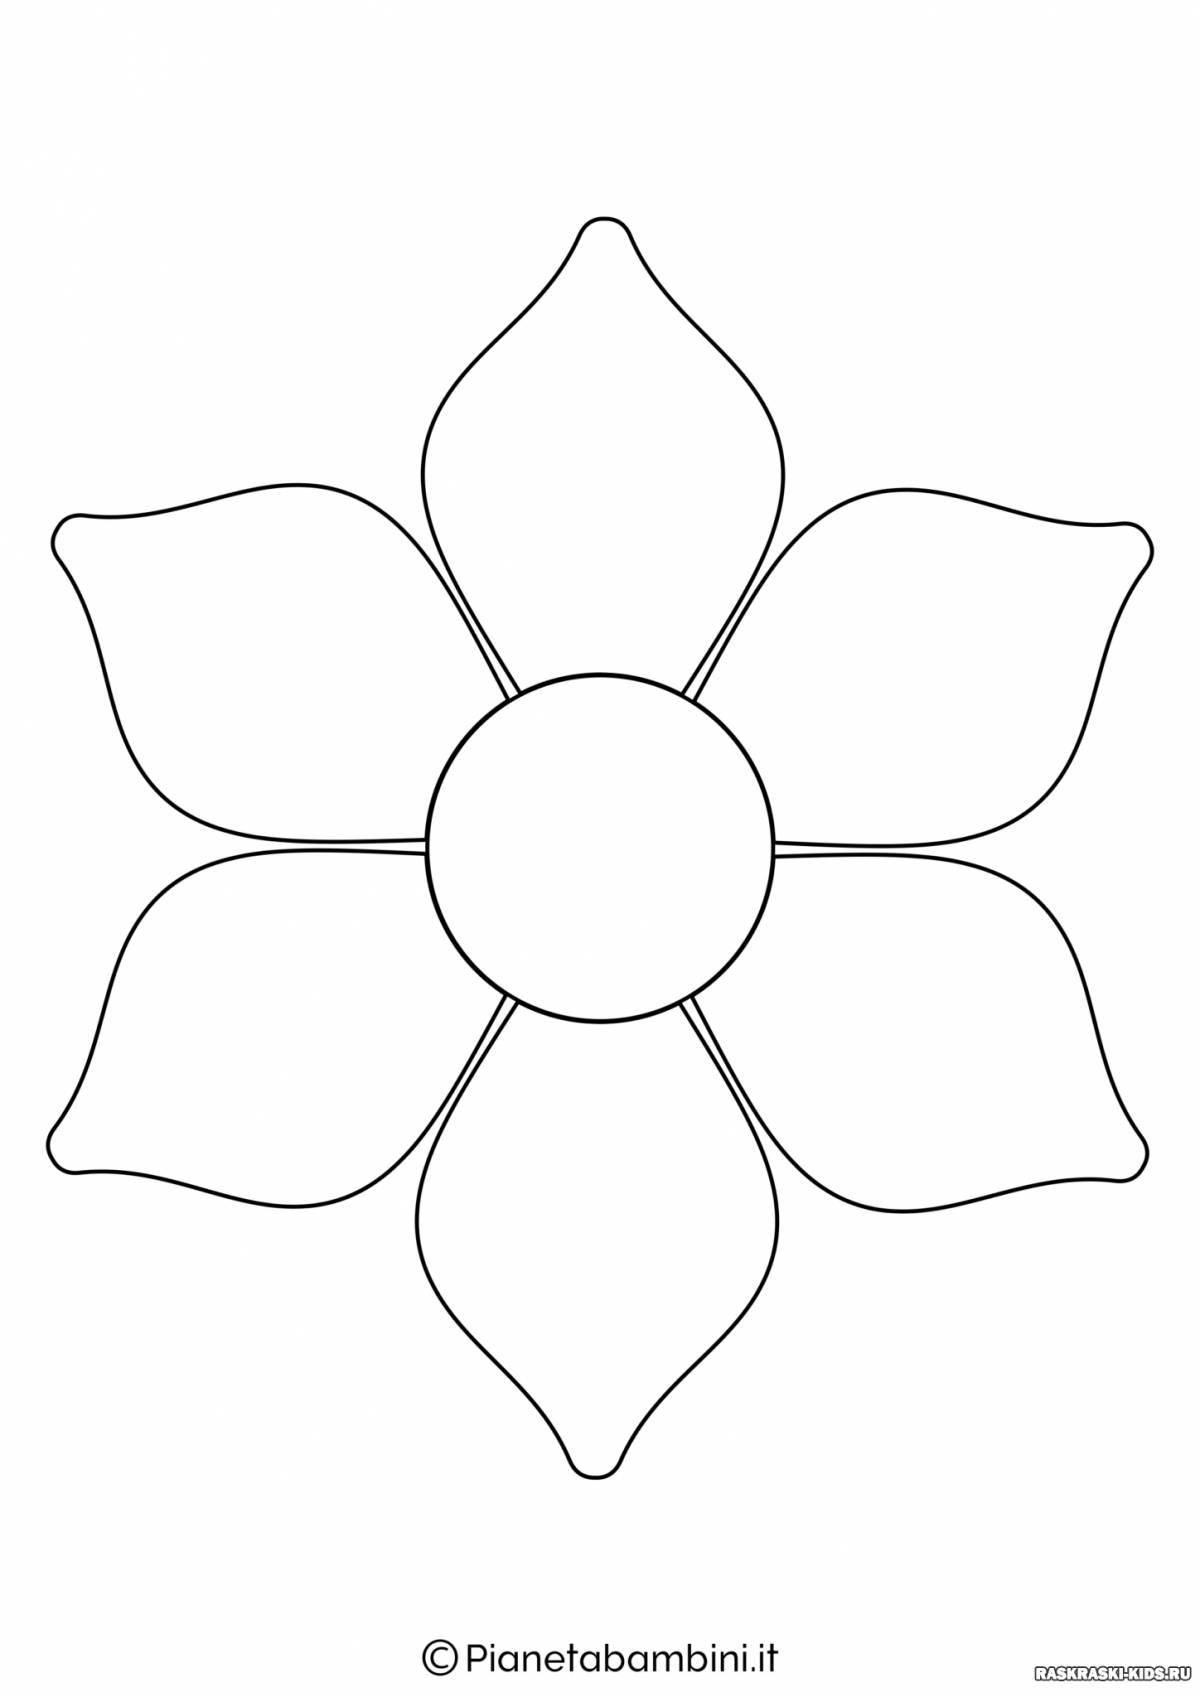 Шаблон цветик семицветик распечатать